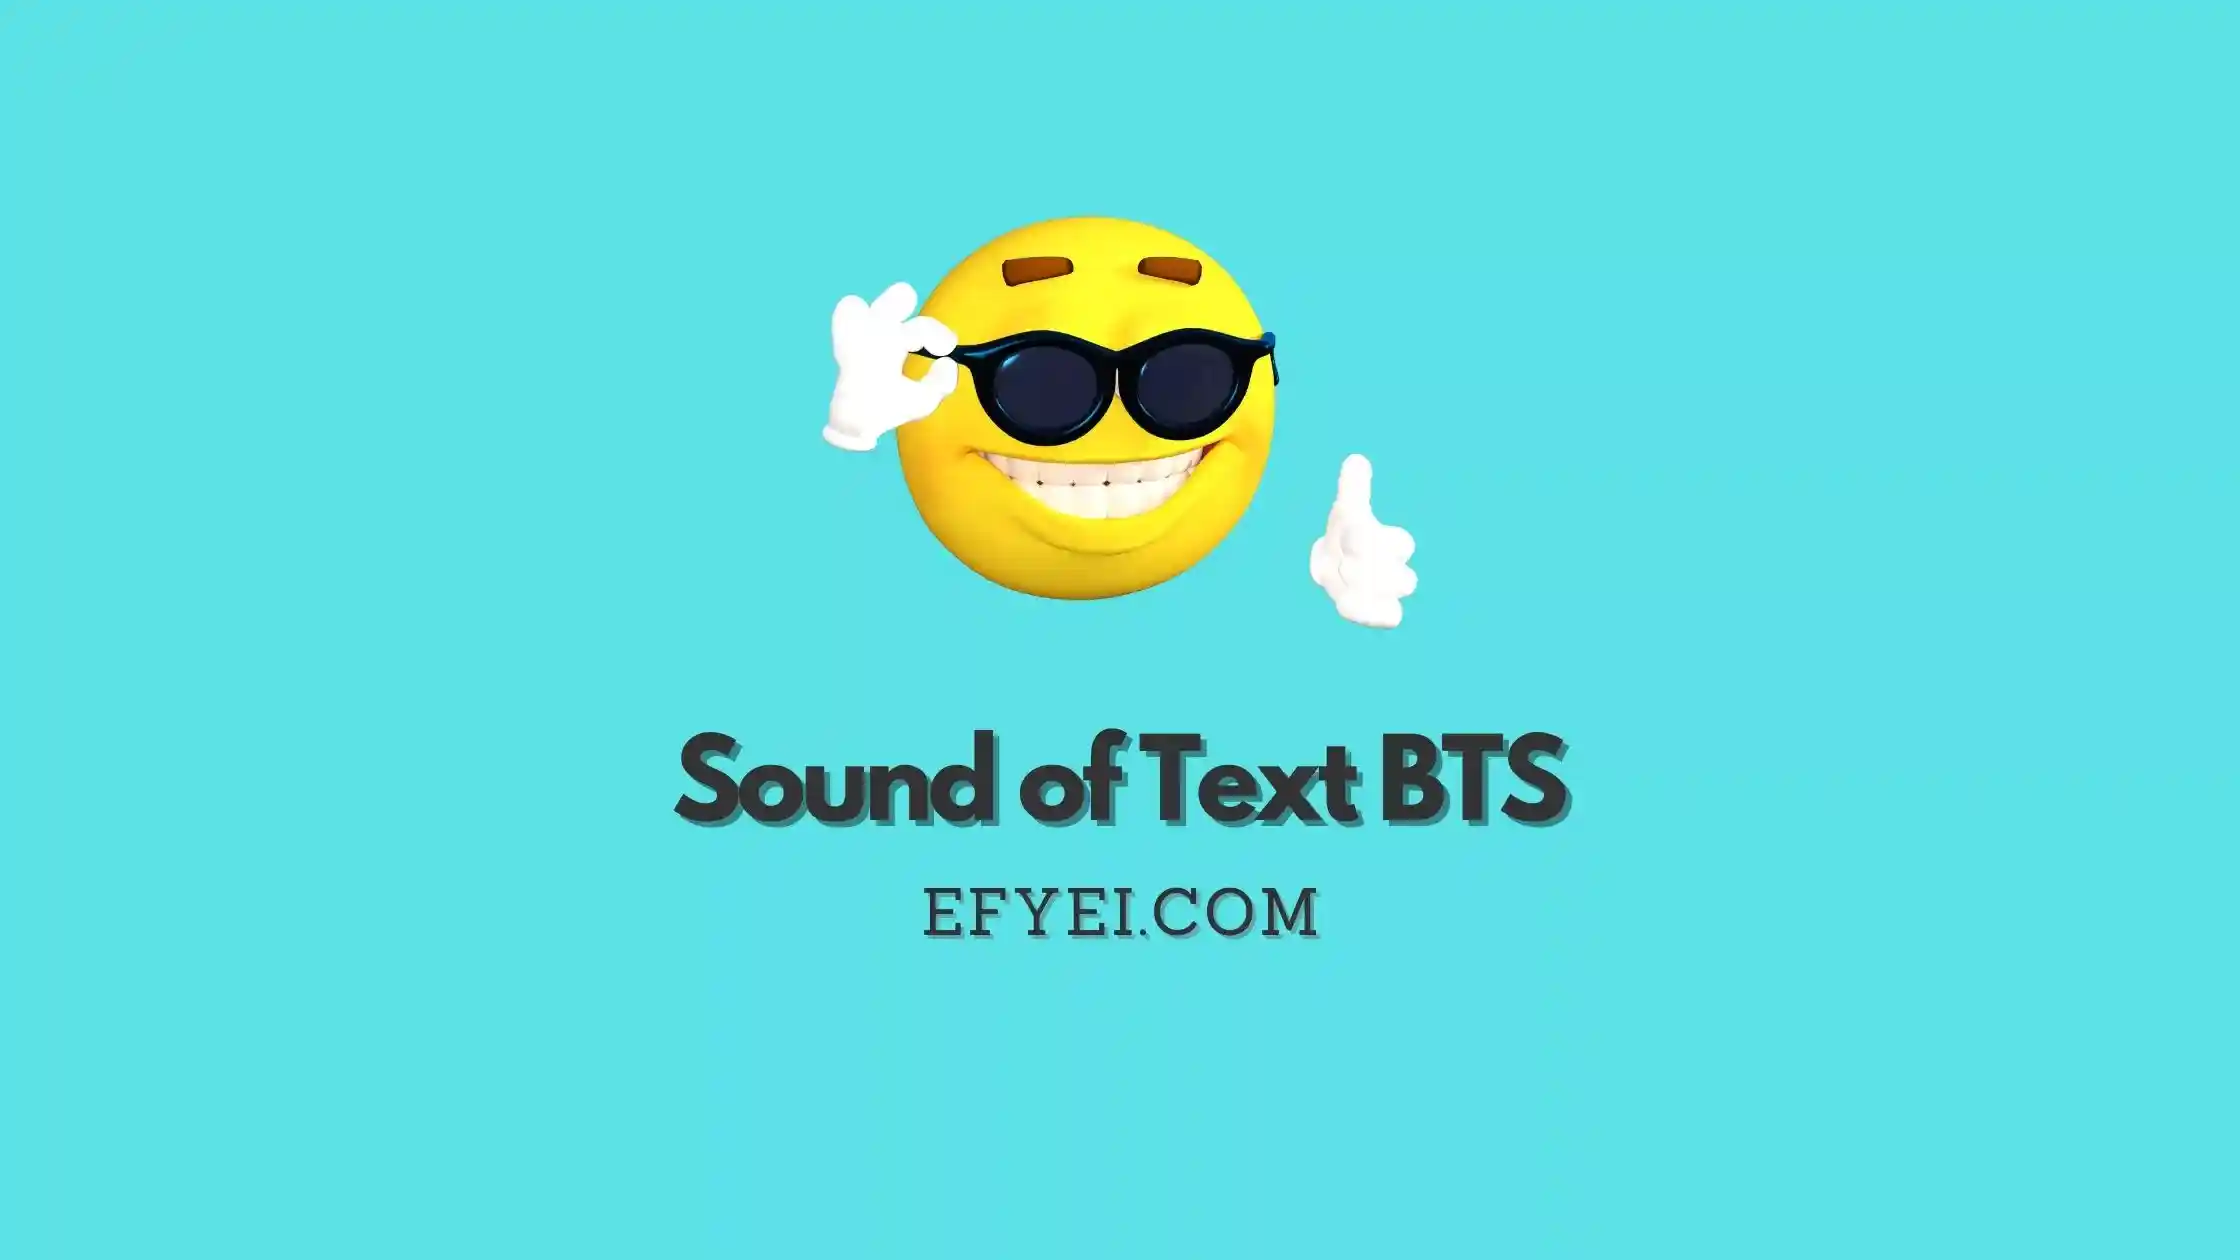 Sound of Text BTS